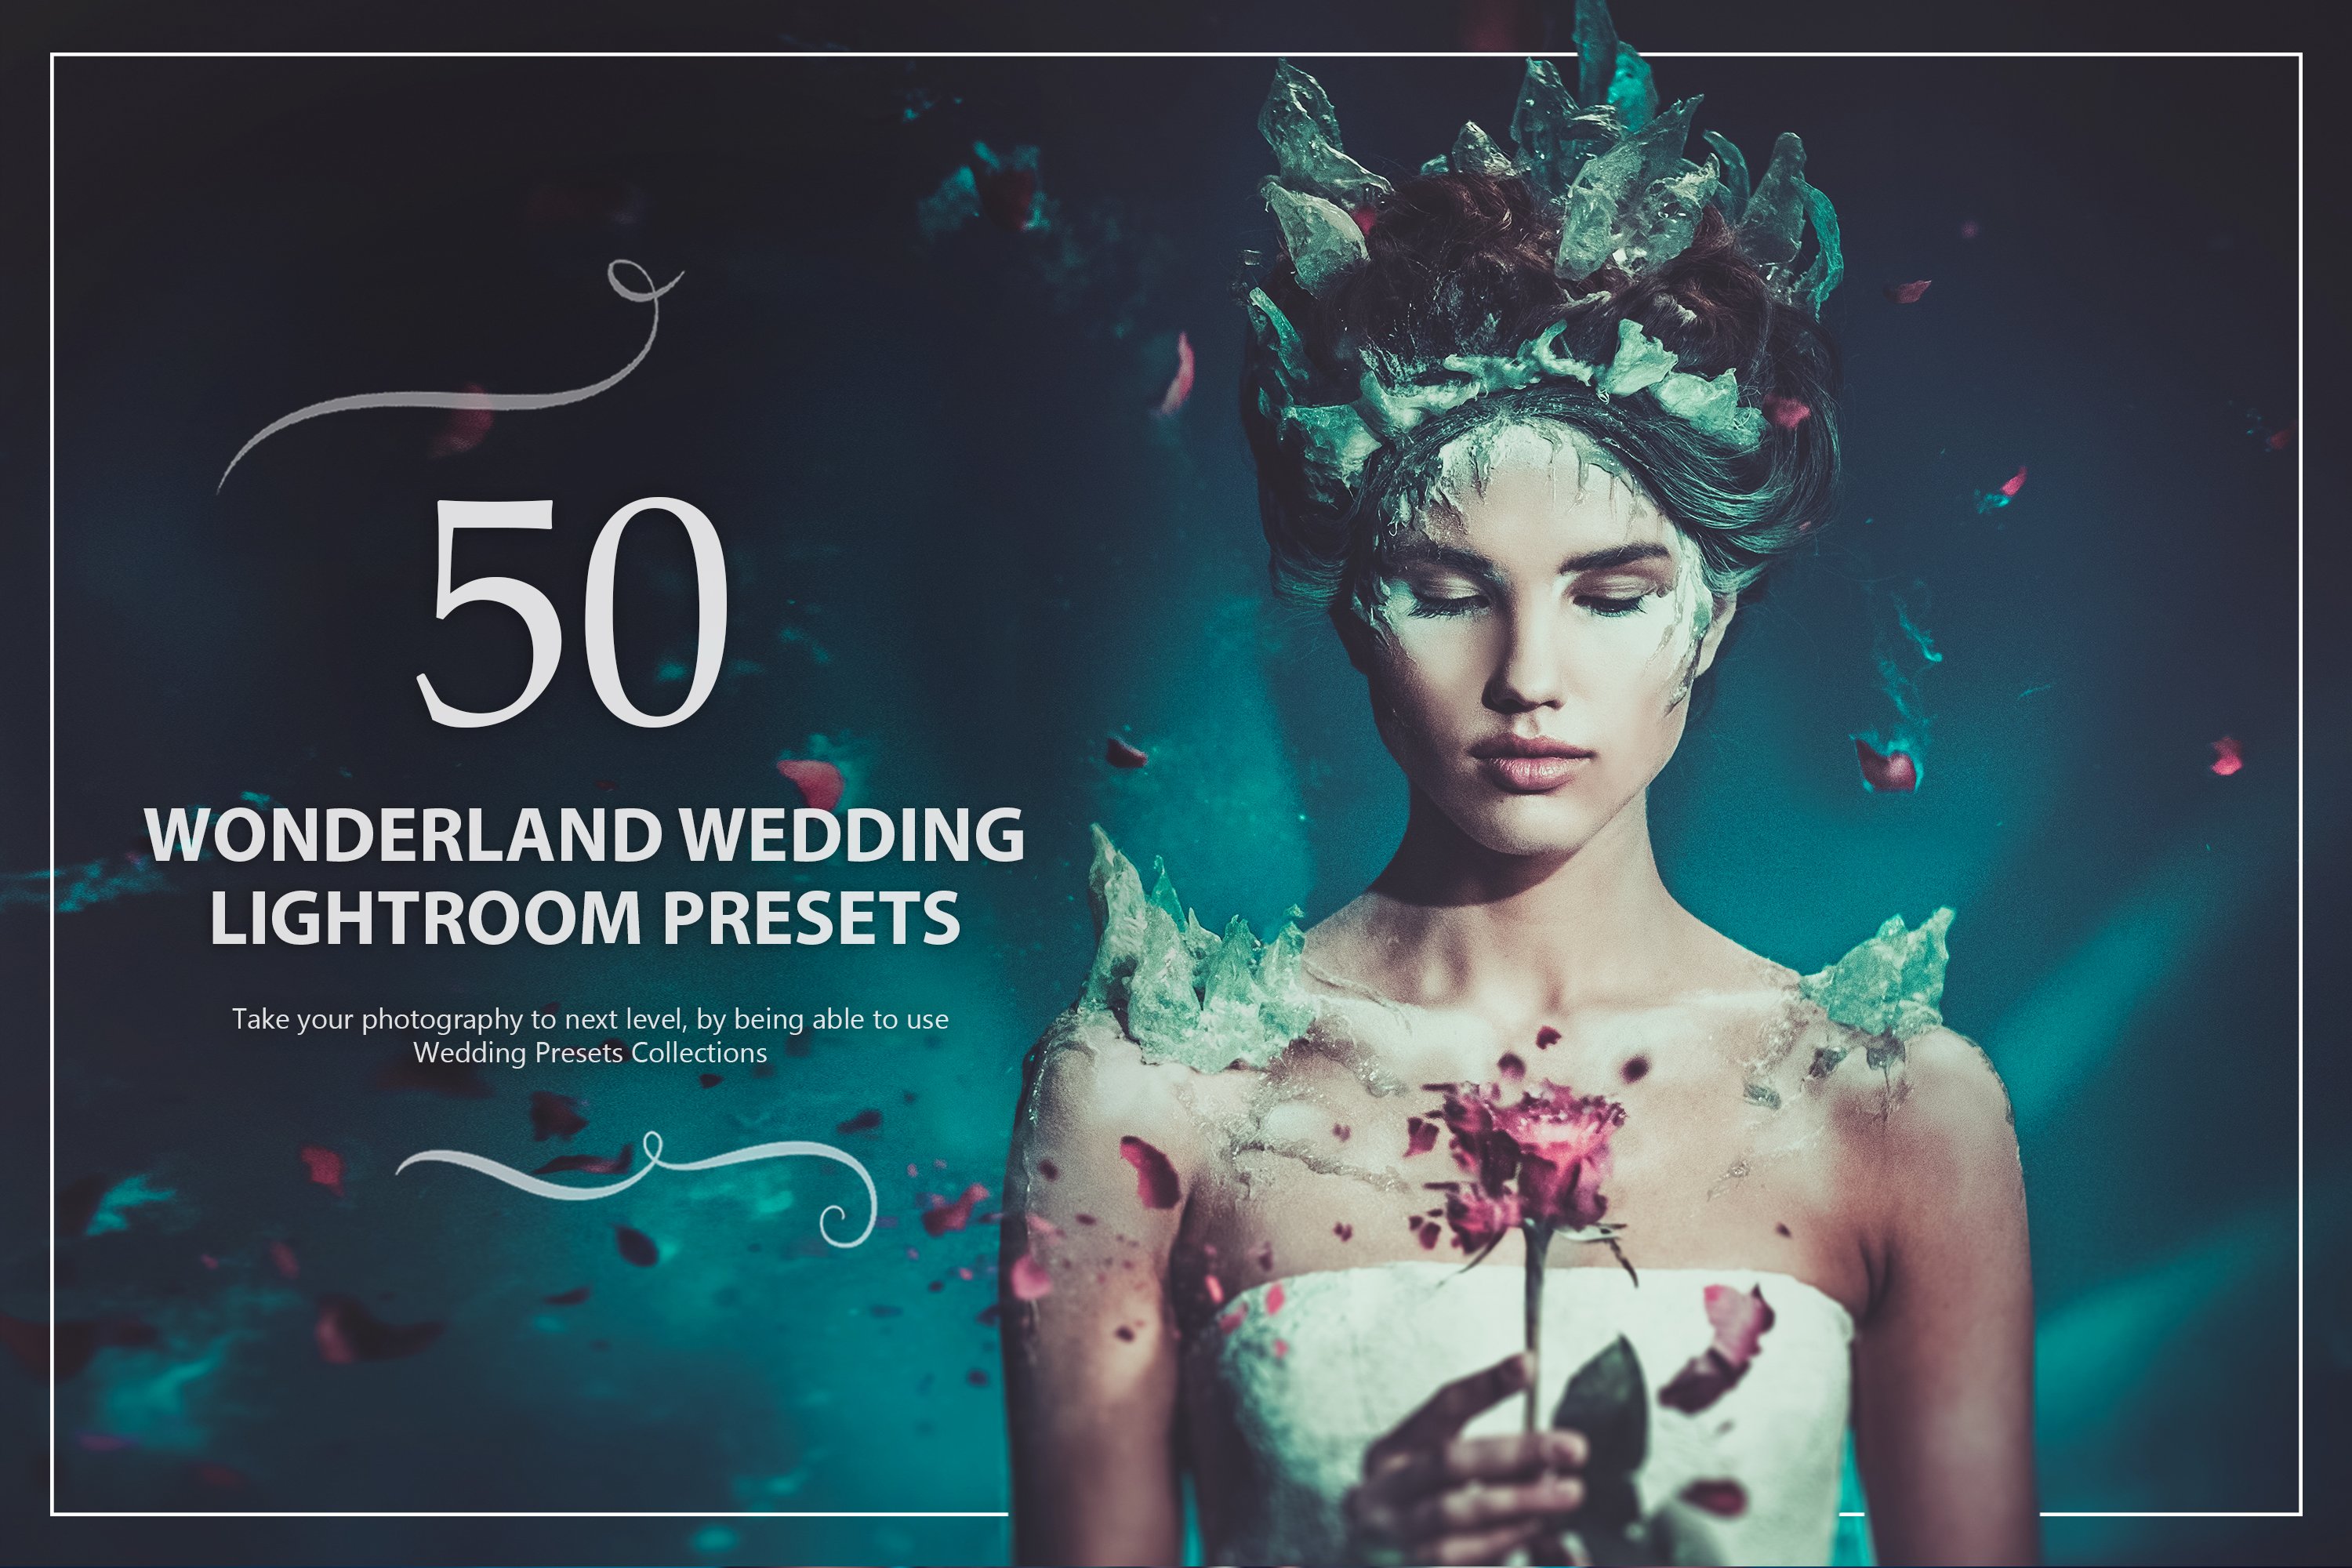 50 Wonderland Wedding Presetscover image.